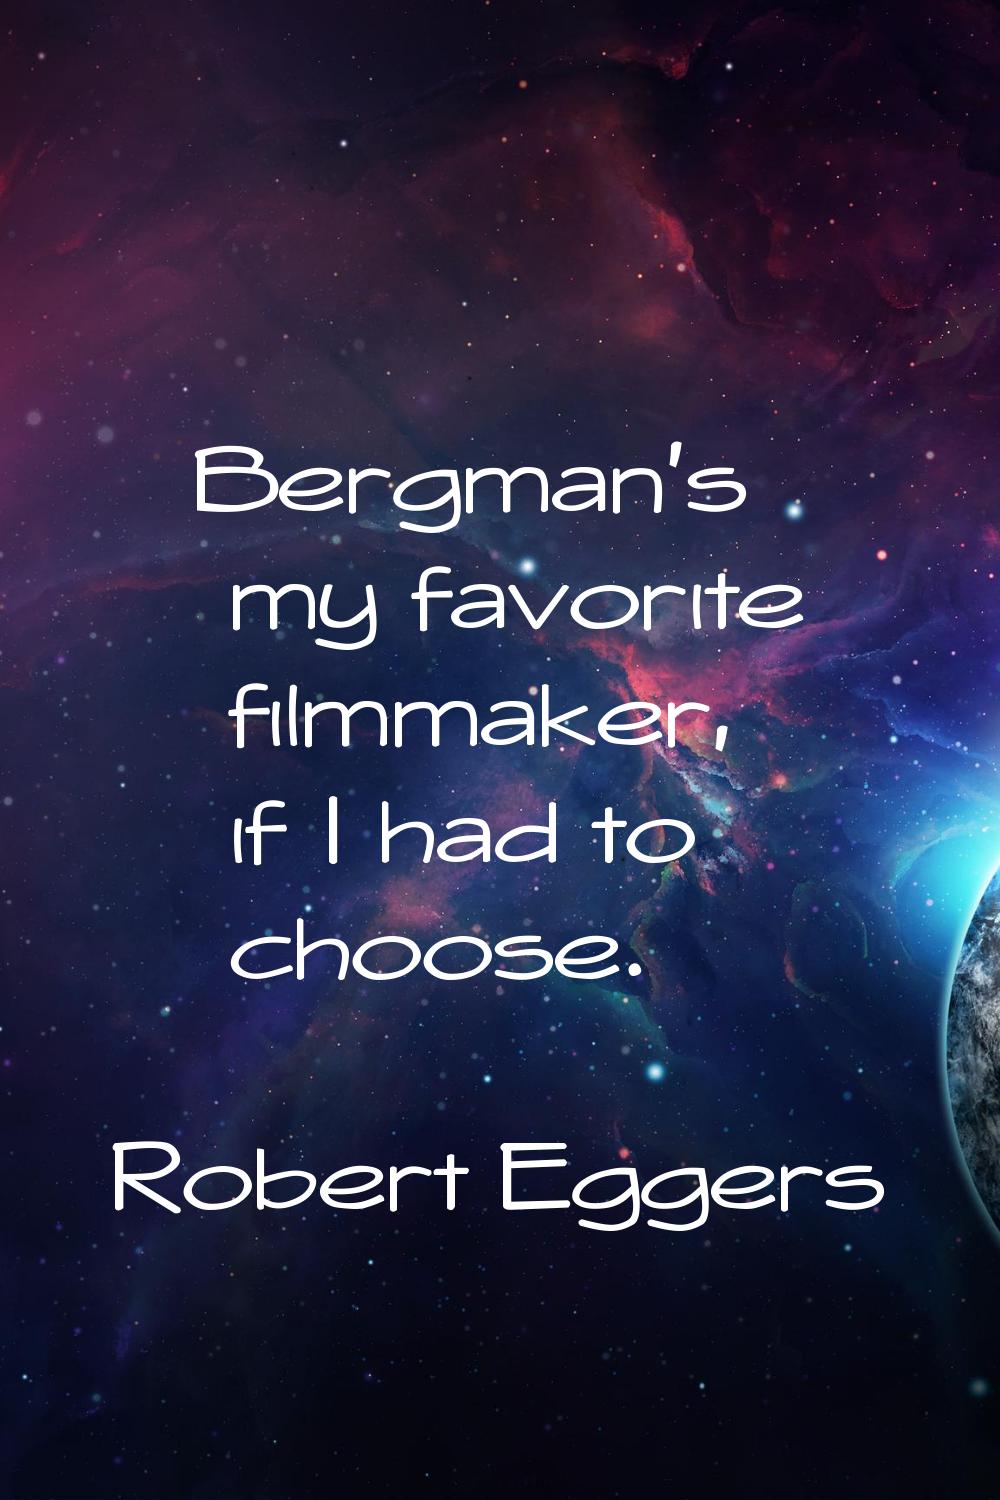 Bergman's my favorite filmmaker, if I had to choose.